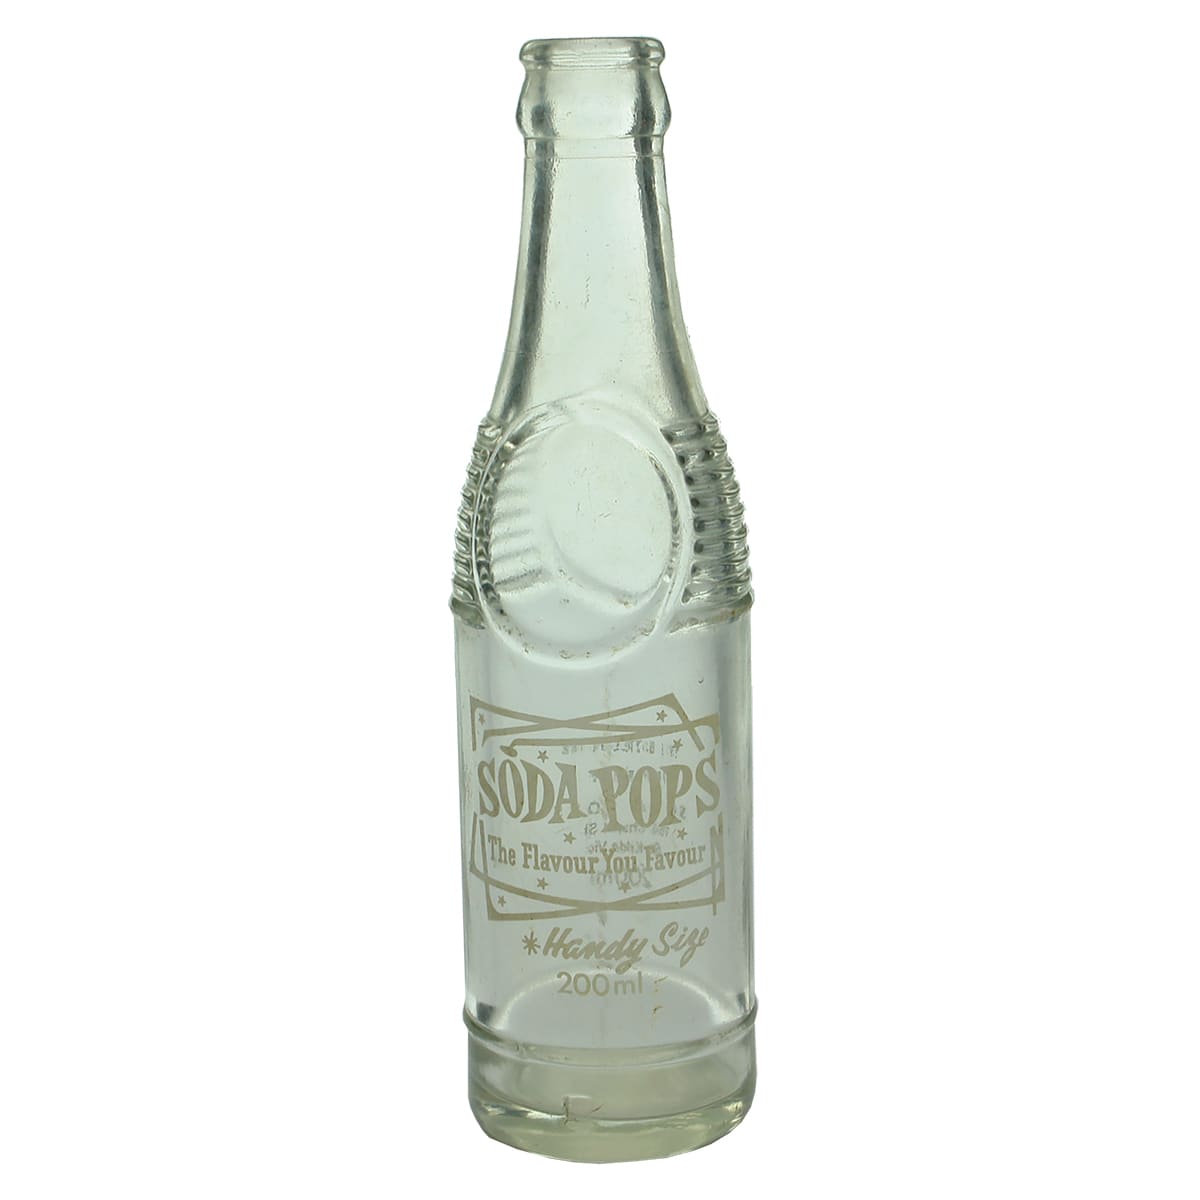 Crown Seal. Soda Pops, St. Kilda. Ceramic Label. 200 ml. (Victoria)